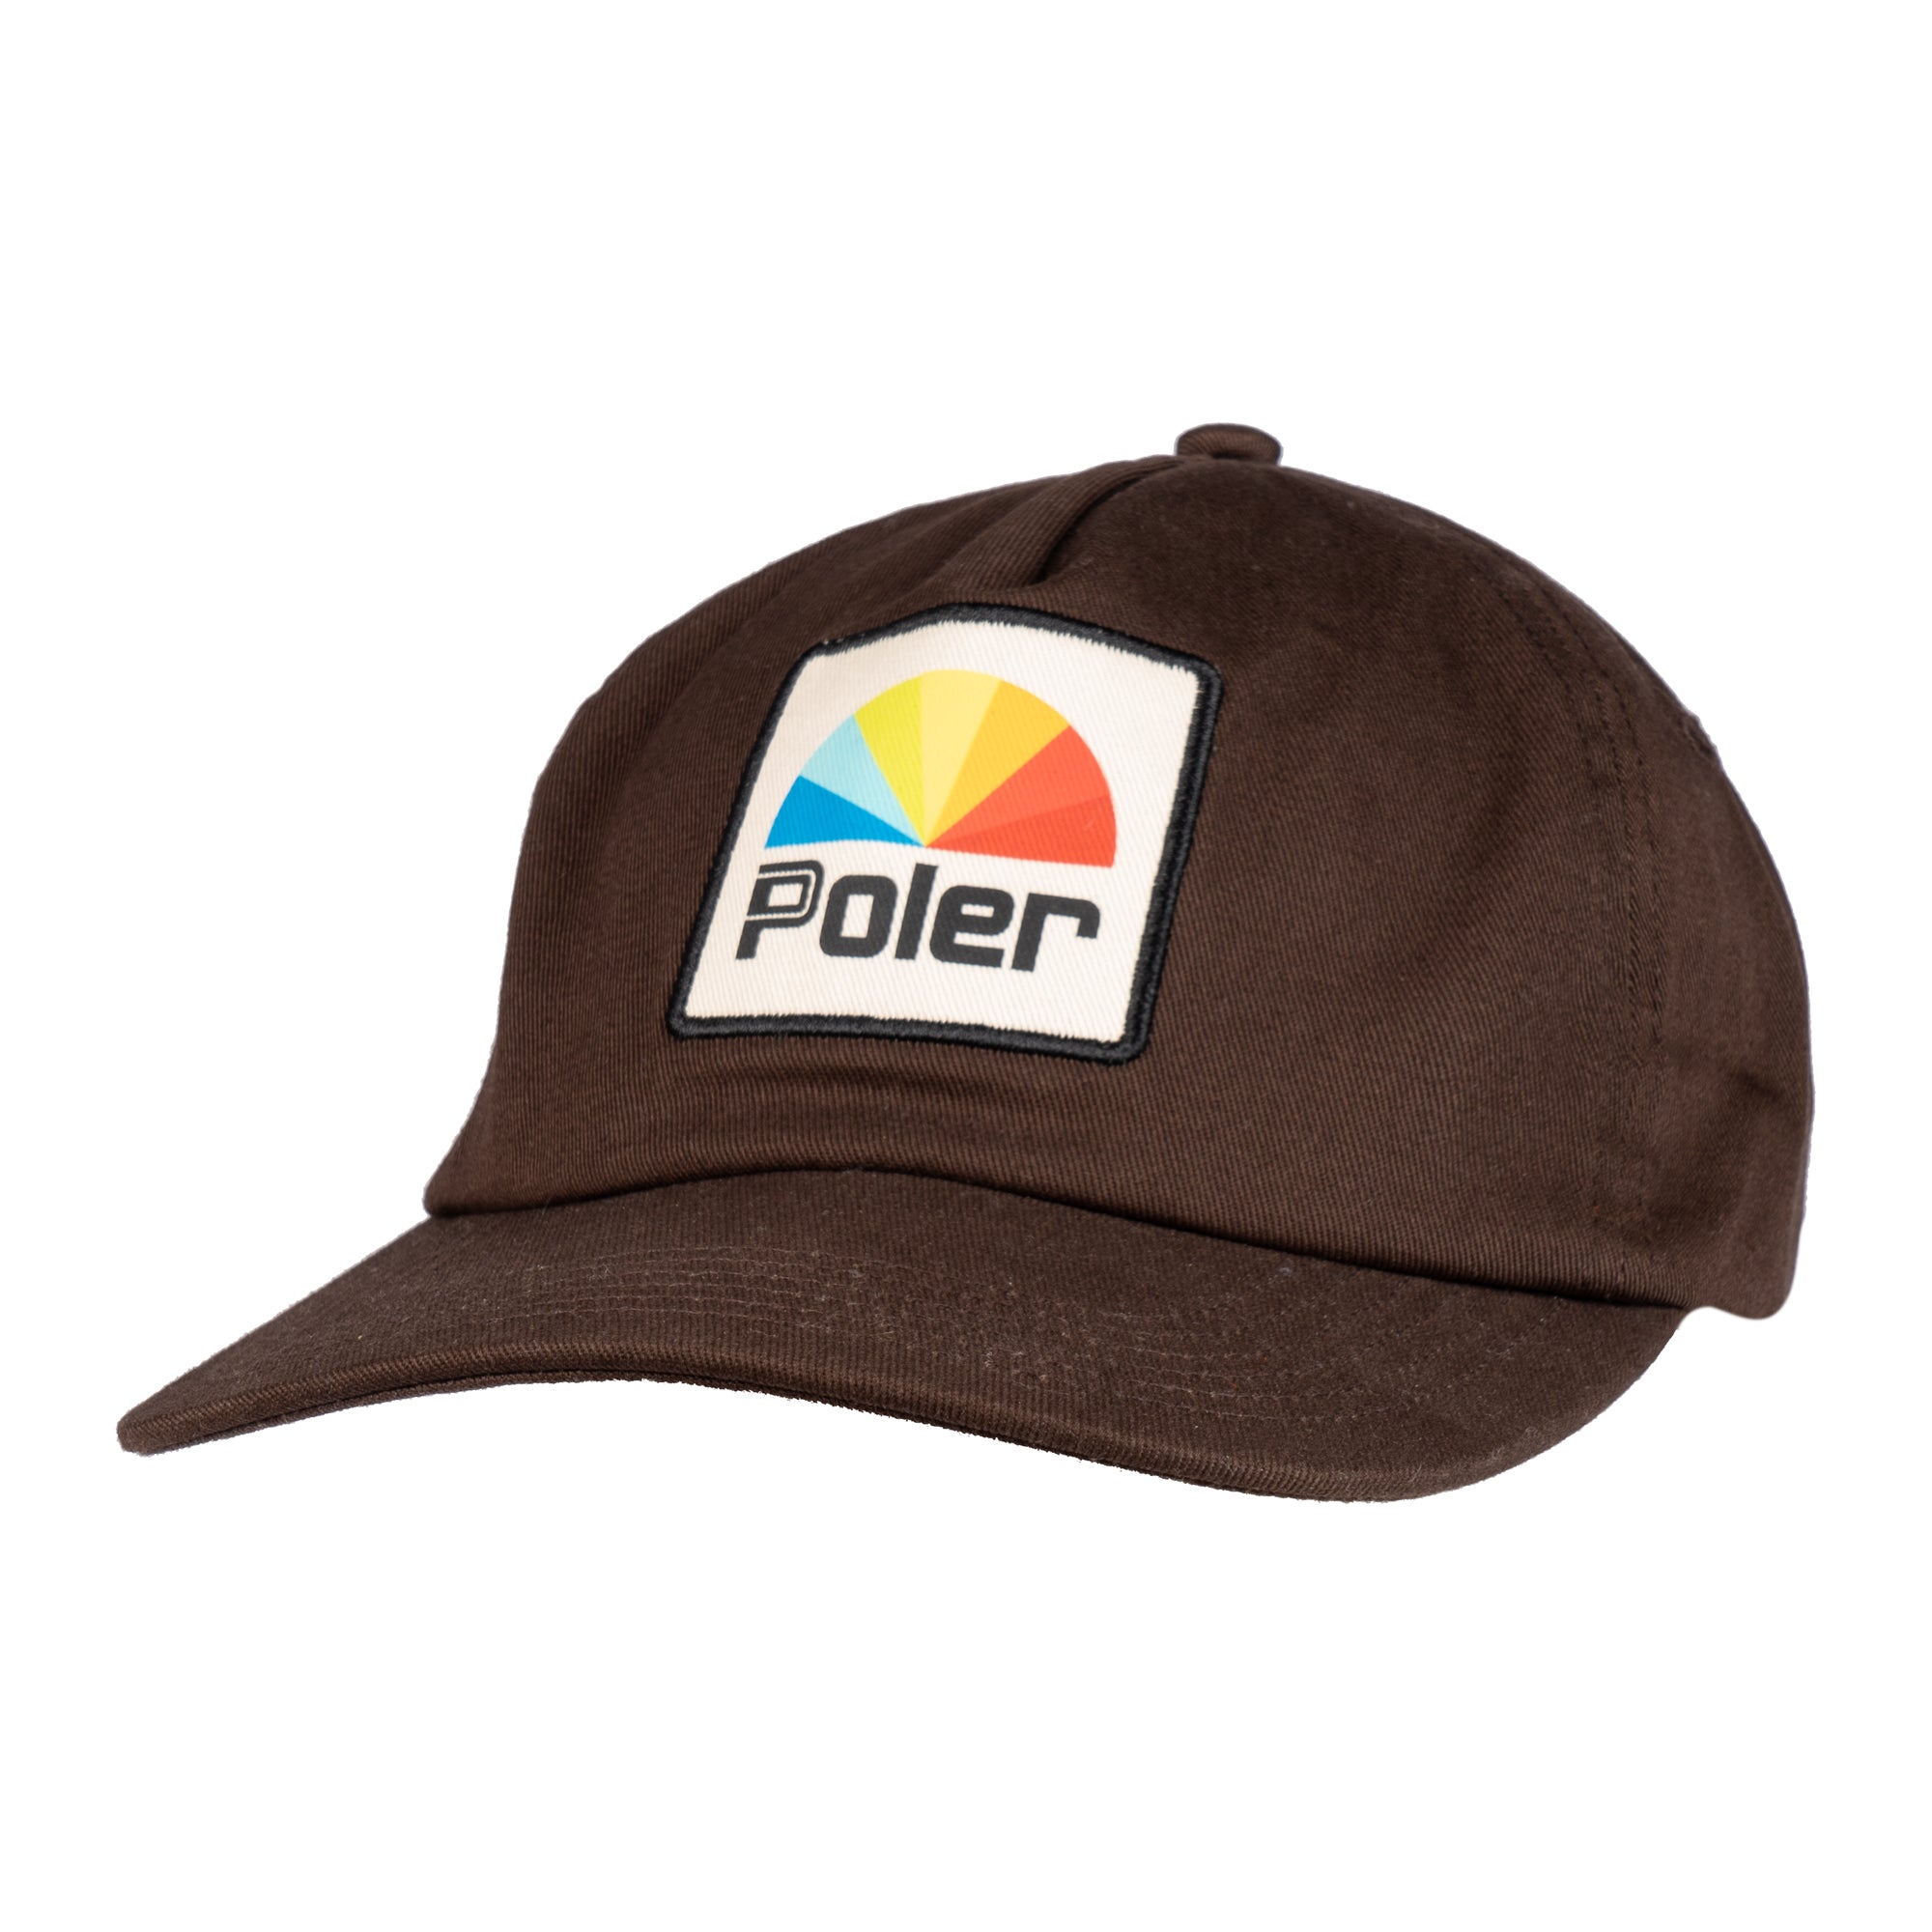 Poler Coastal Floppy Baseball Hat in Green for Men